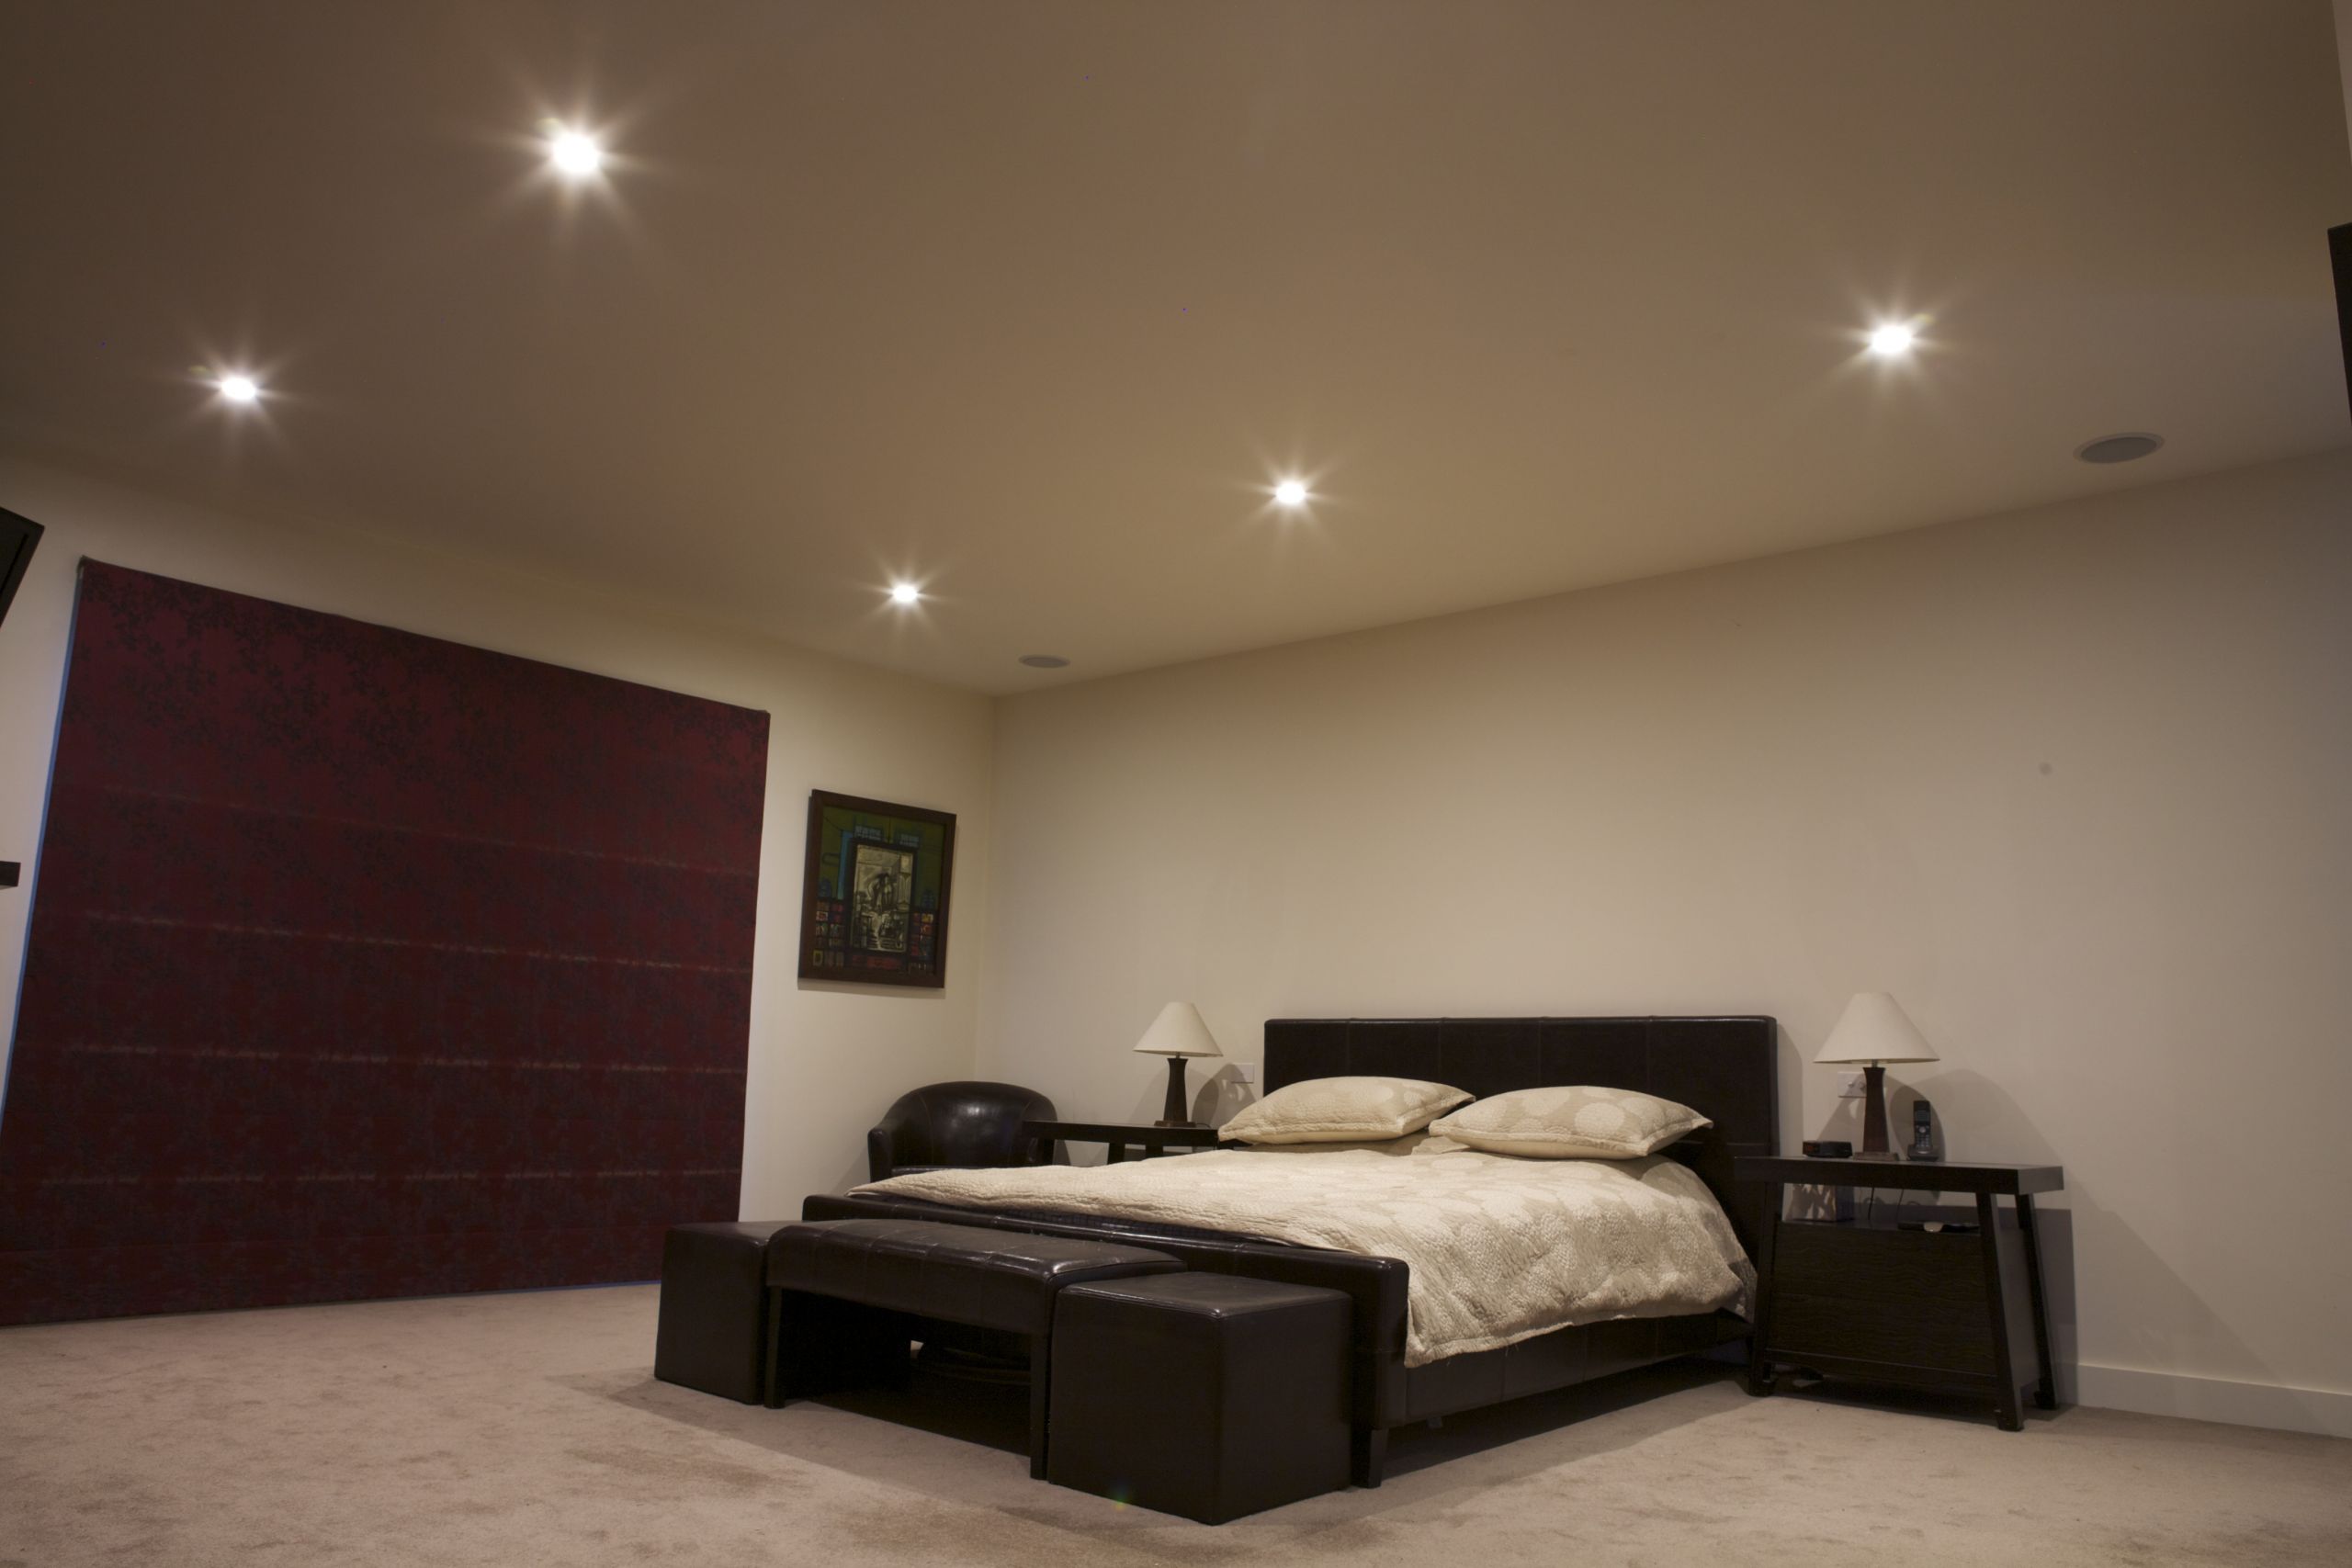 Led Bedroom Lights
 70mm or 90mm Downlights Choosing LED lights